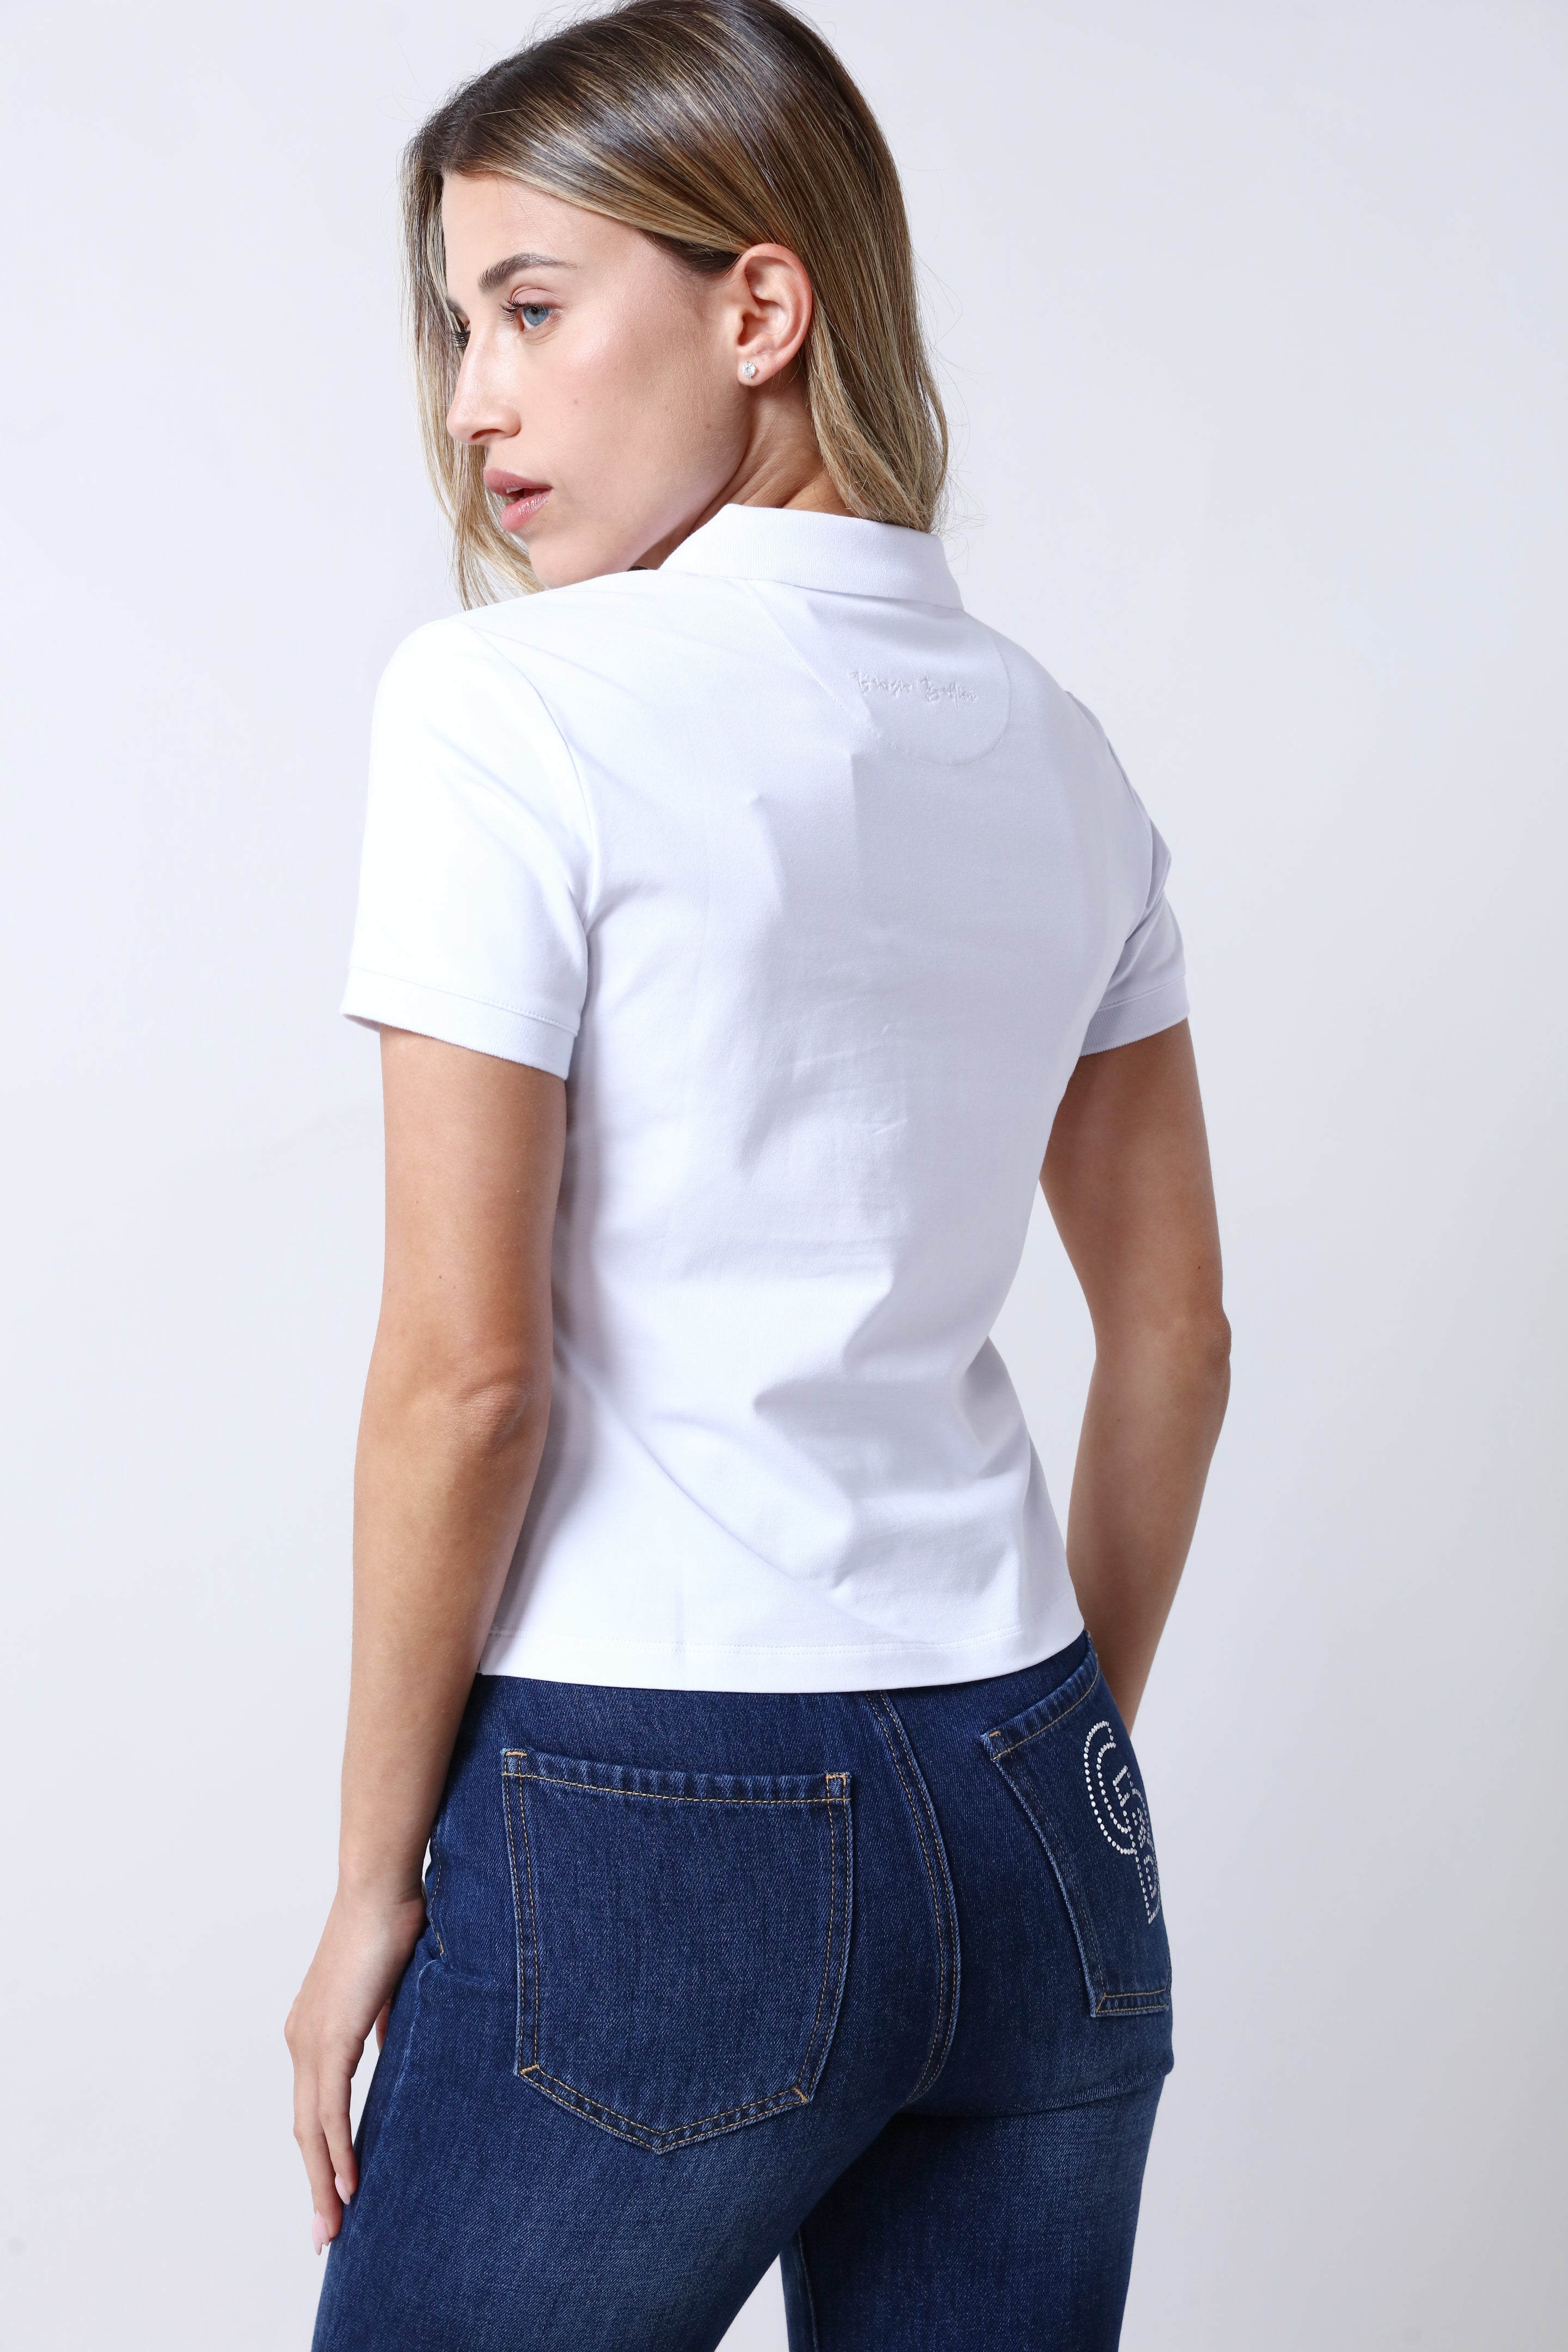 חולצת צווארון GIORGIO BELLINI בצבע לבן לנשים